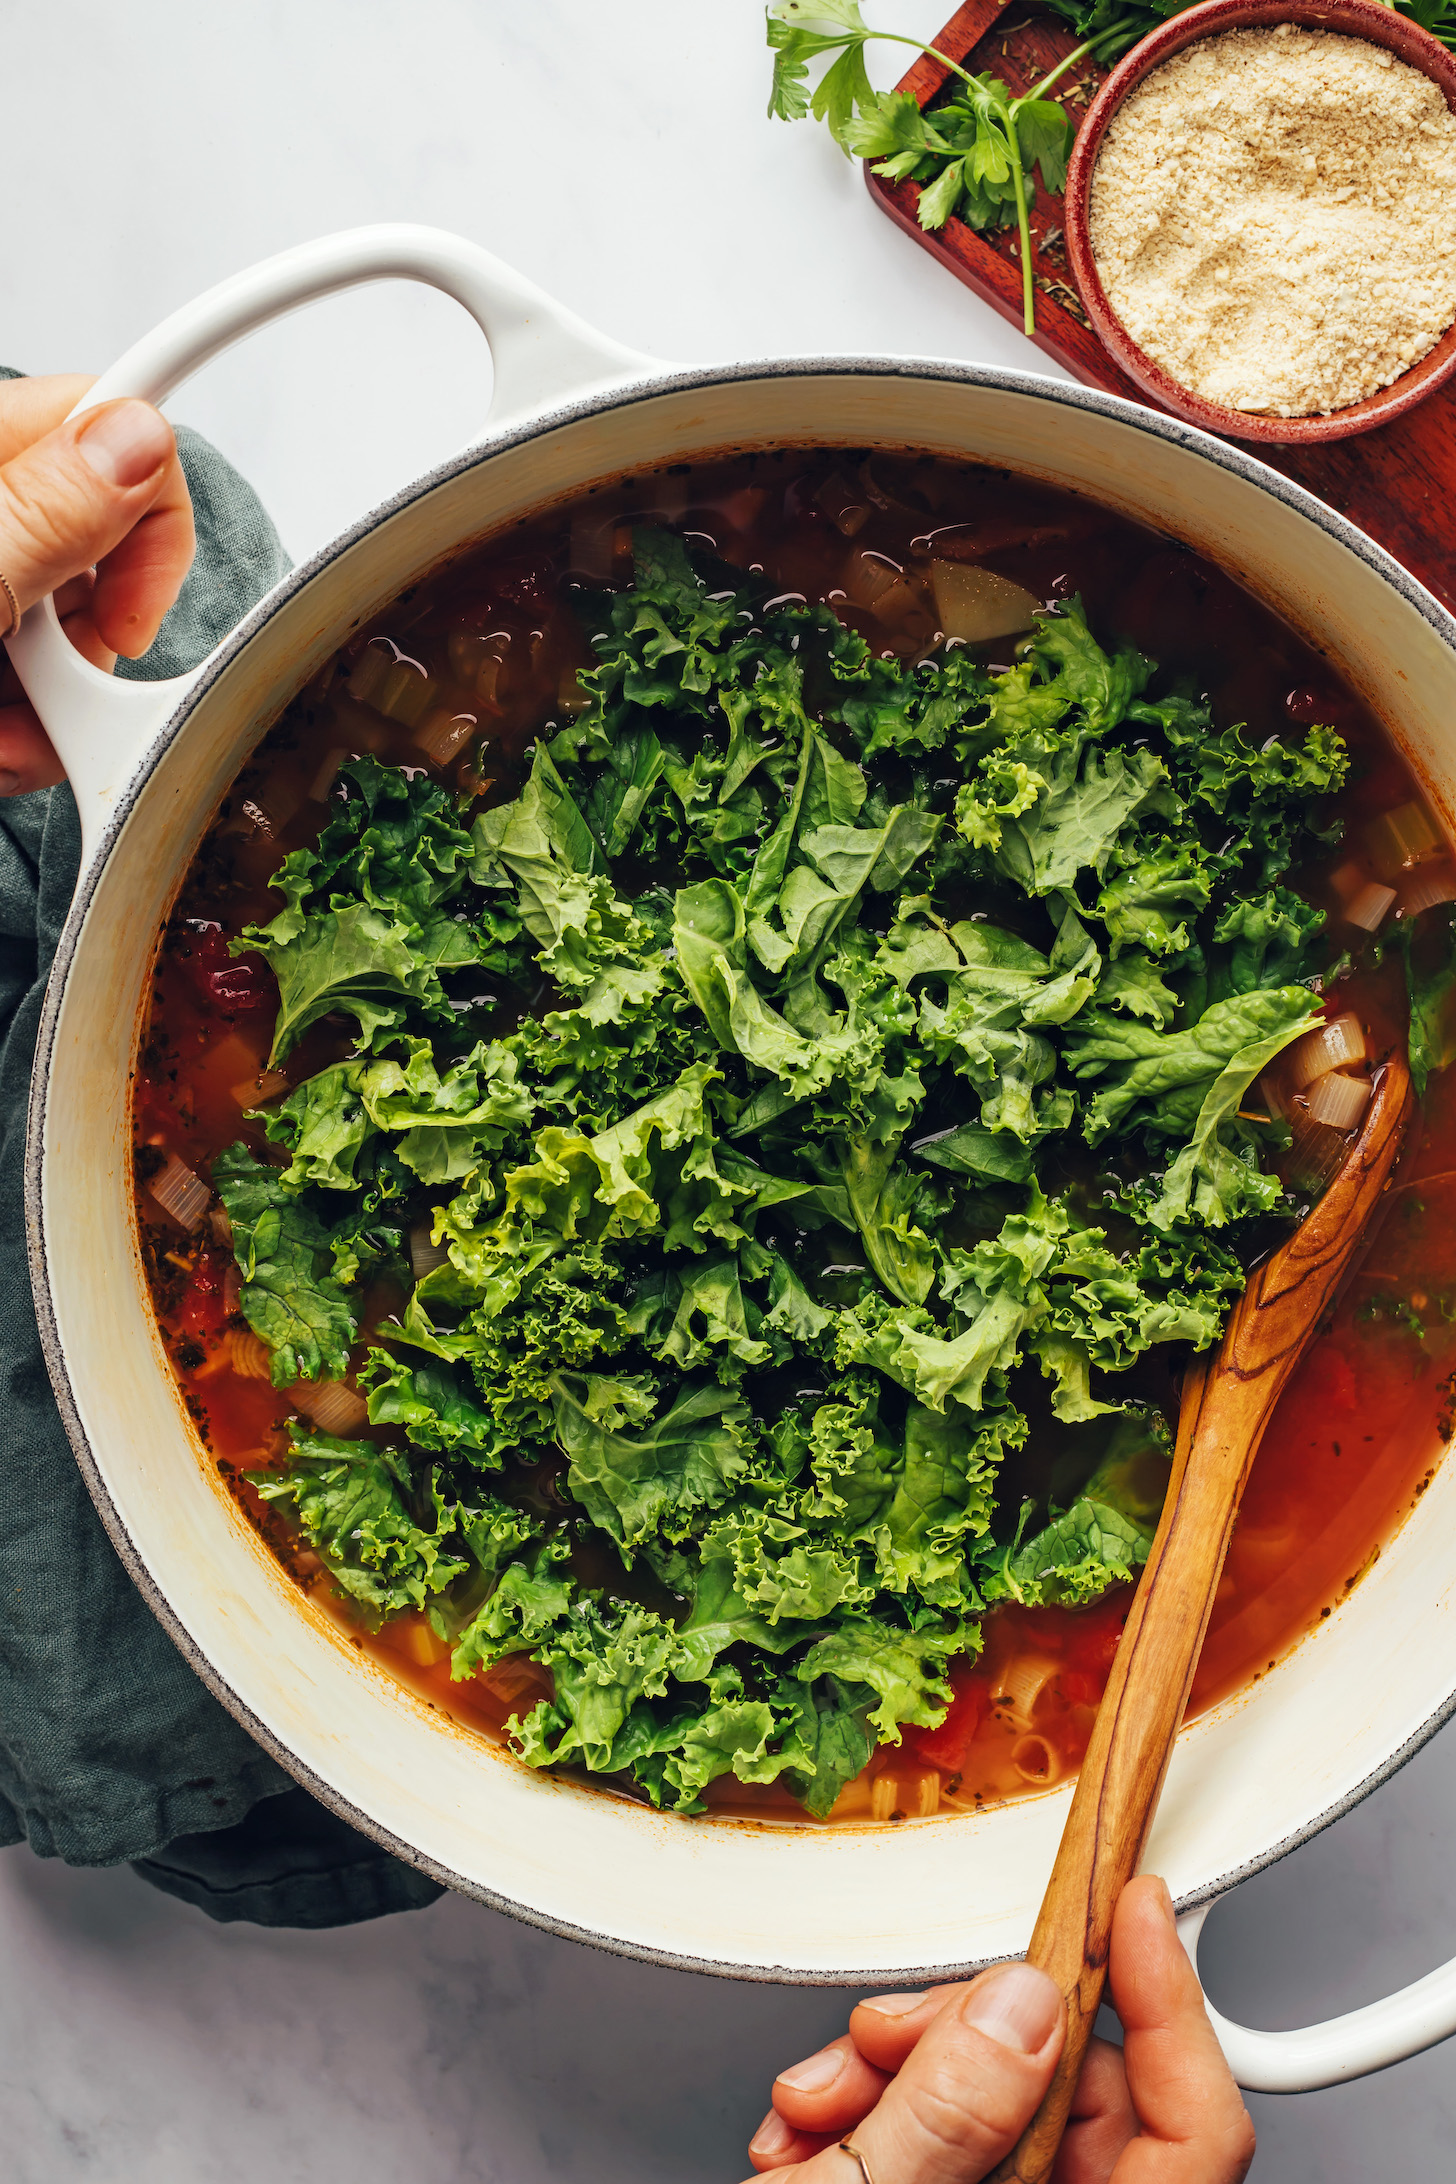 Stirring fresh chopped kale into a pot of soup